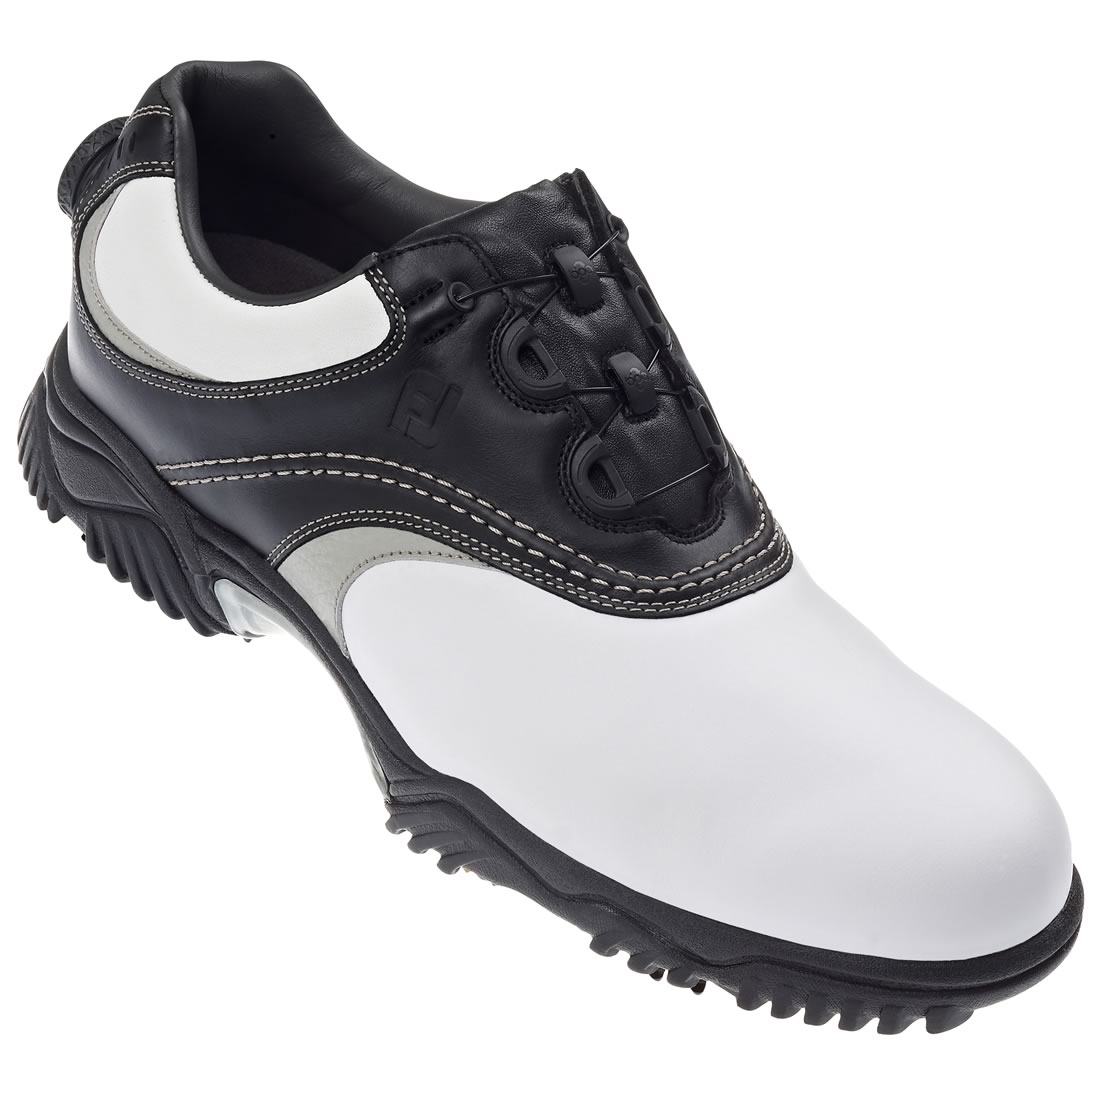 Contour Series Golf Shoes